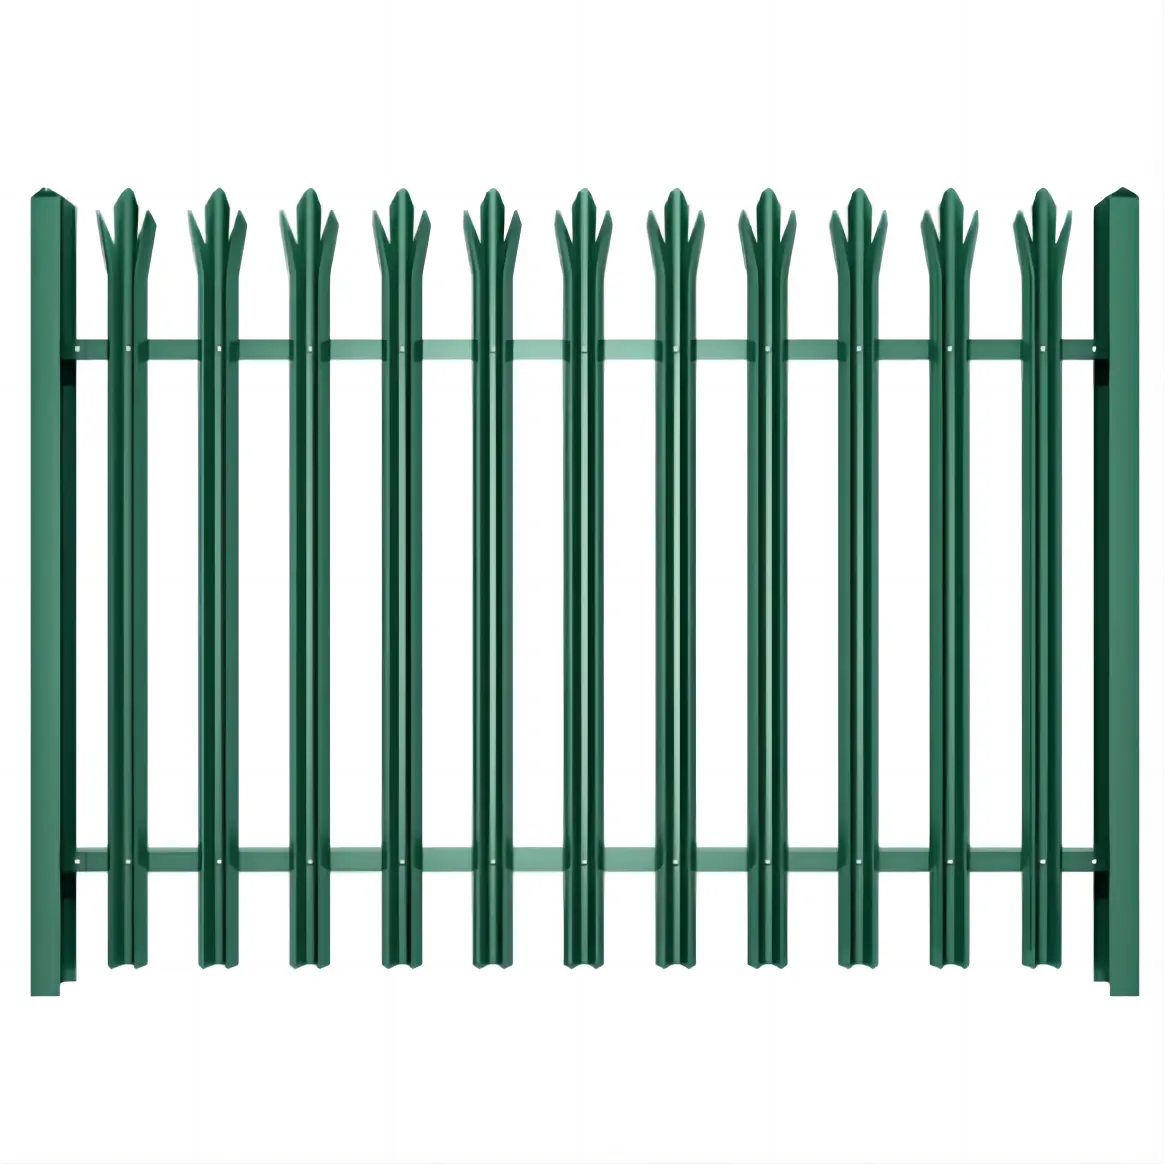 Harga pagar palisade tahan air desain baru berbagai jenis pagar Eropa palisade picket ipe h post pagar untuk taman dekoratif